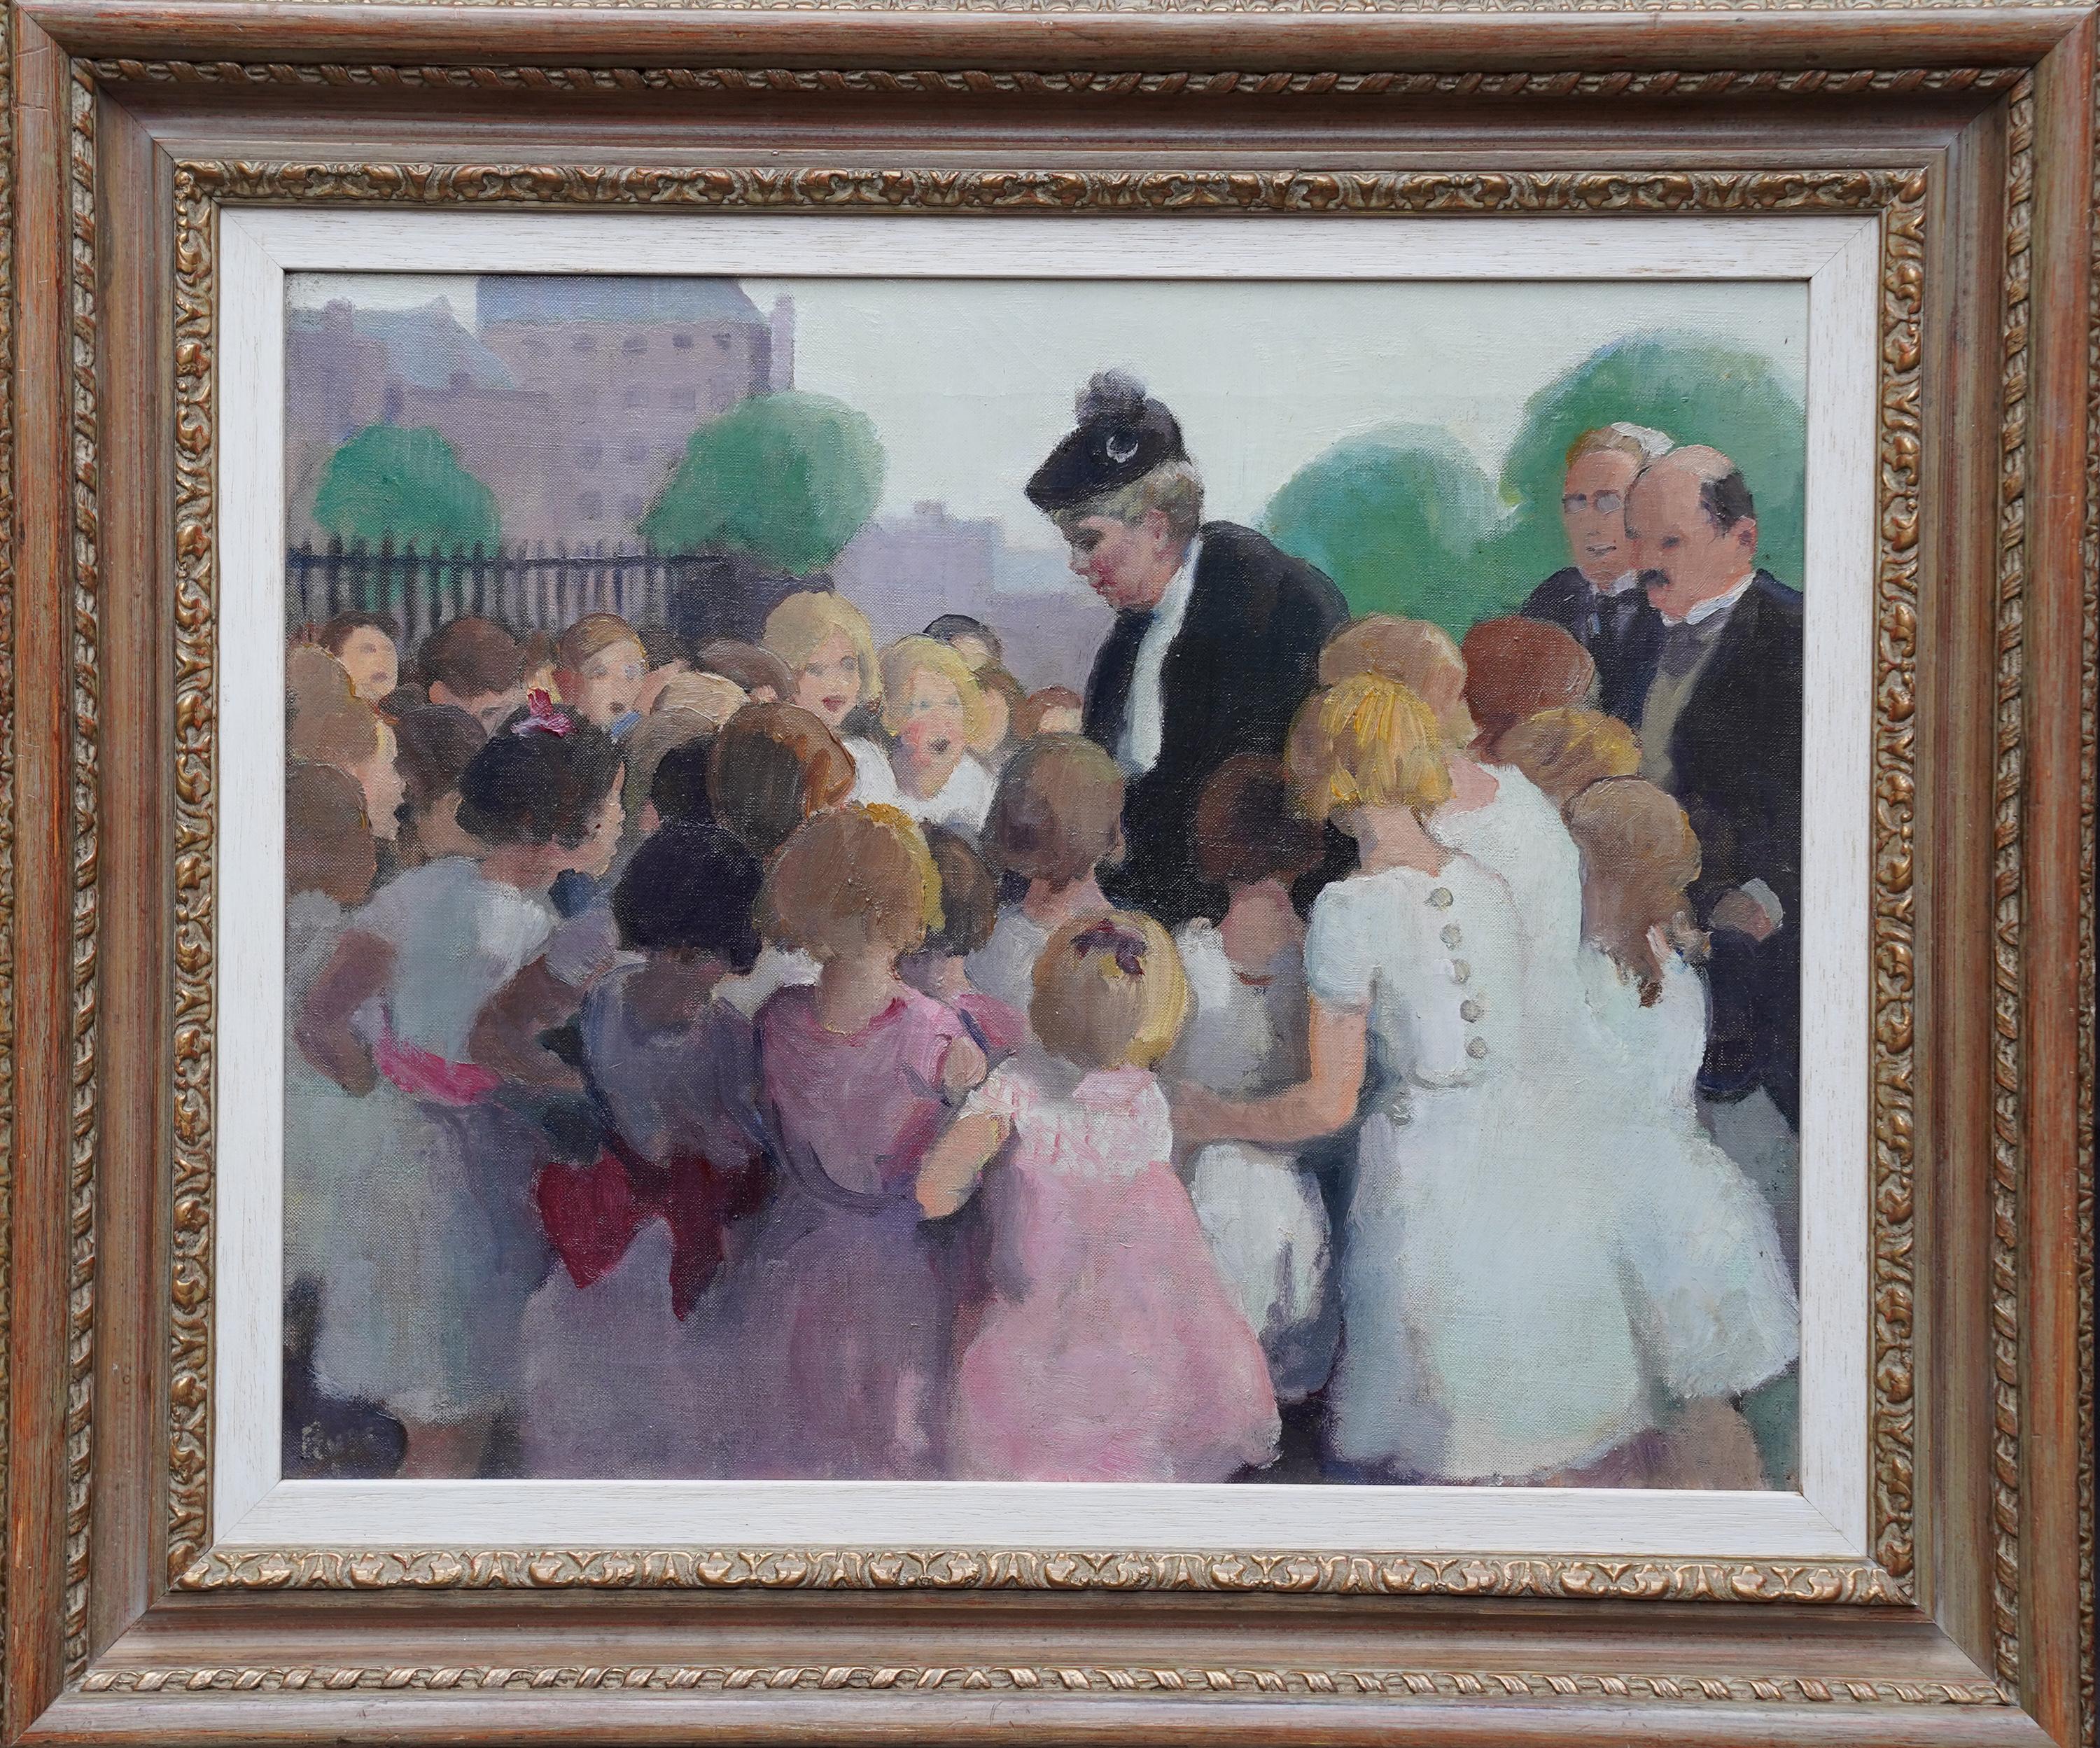 Les enfants de l'école Queen Mary Greeting - Peinture à l'huile de portrait de la royauté britannique de 1910